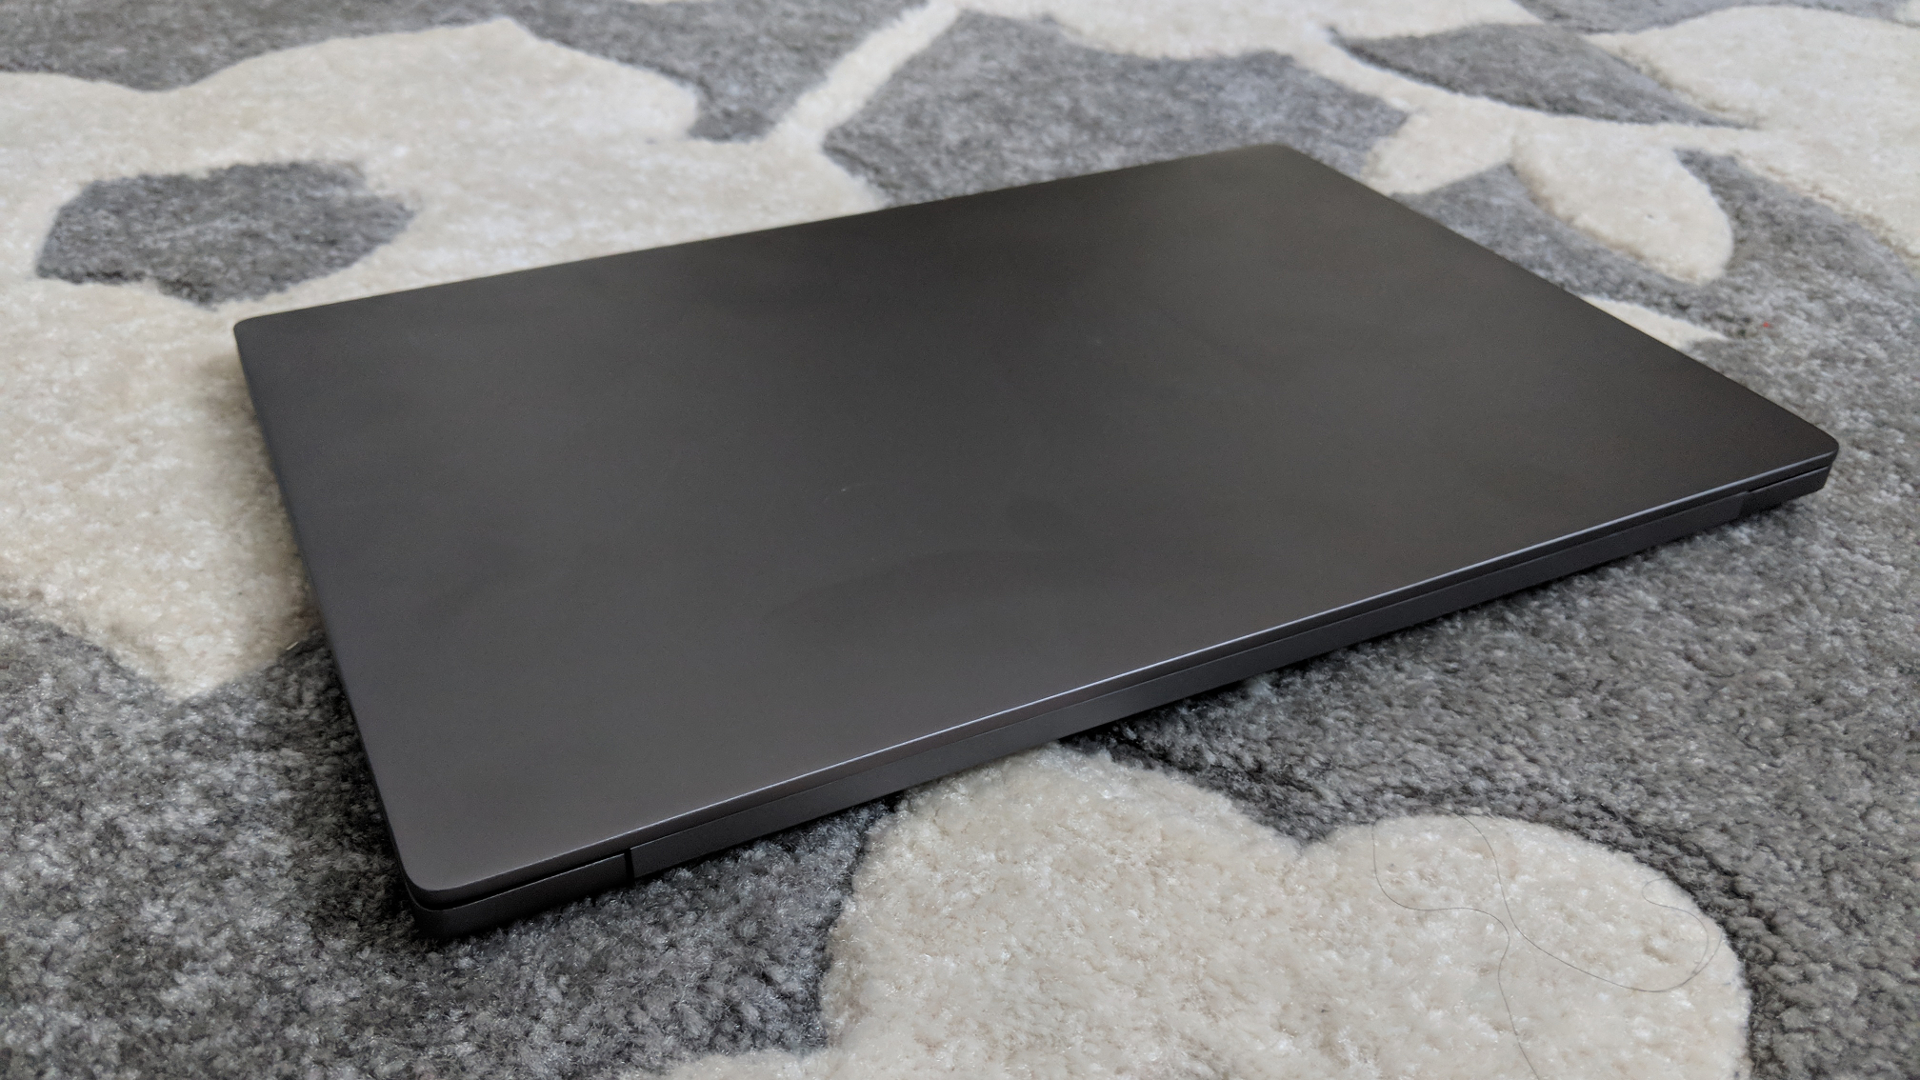 Xiaomi Mi Notebook Авито